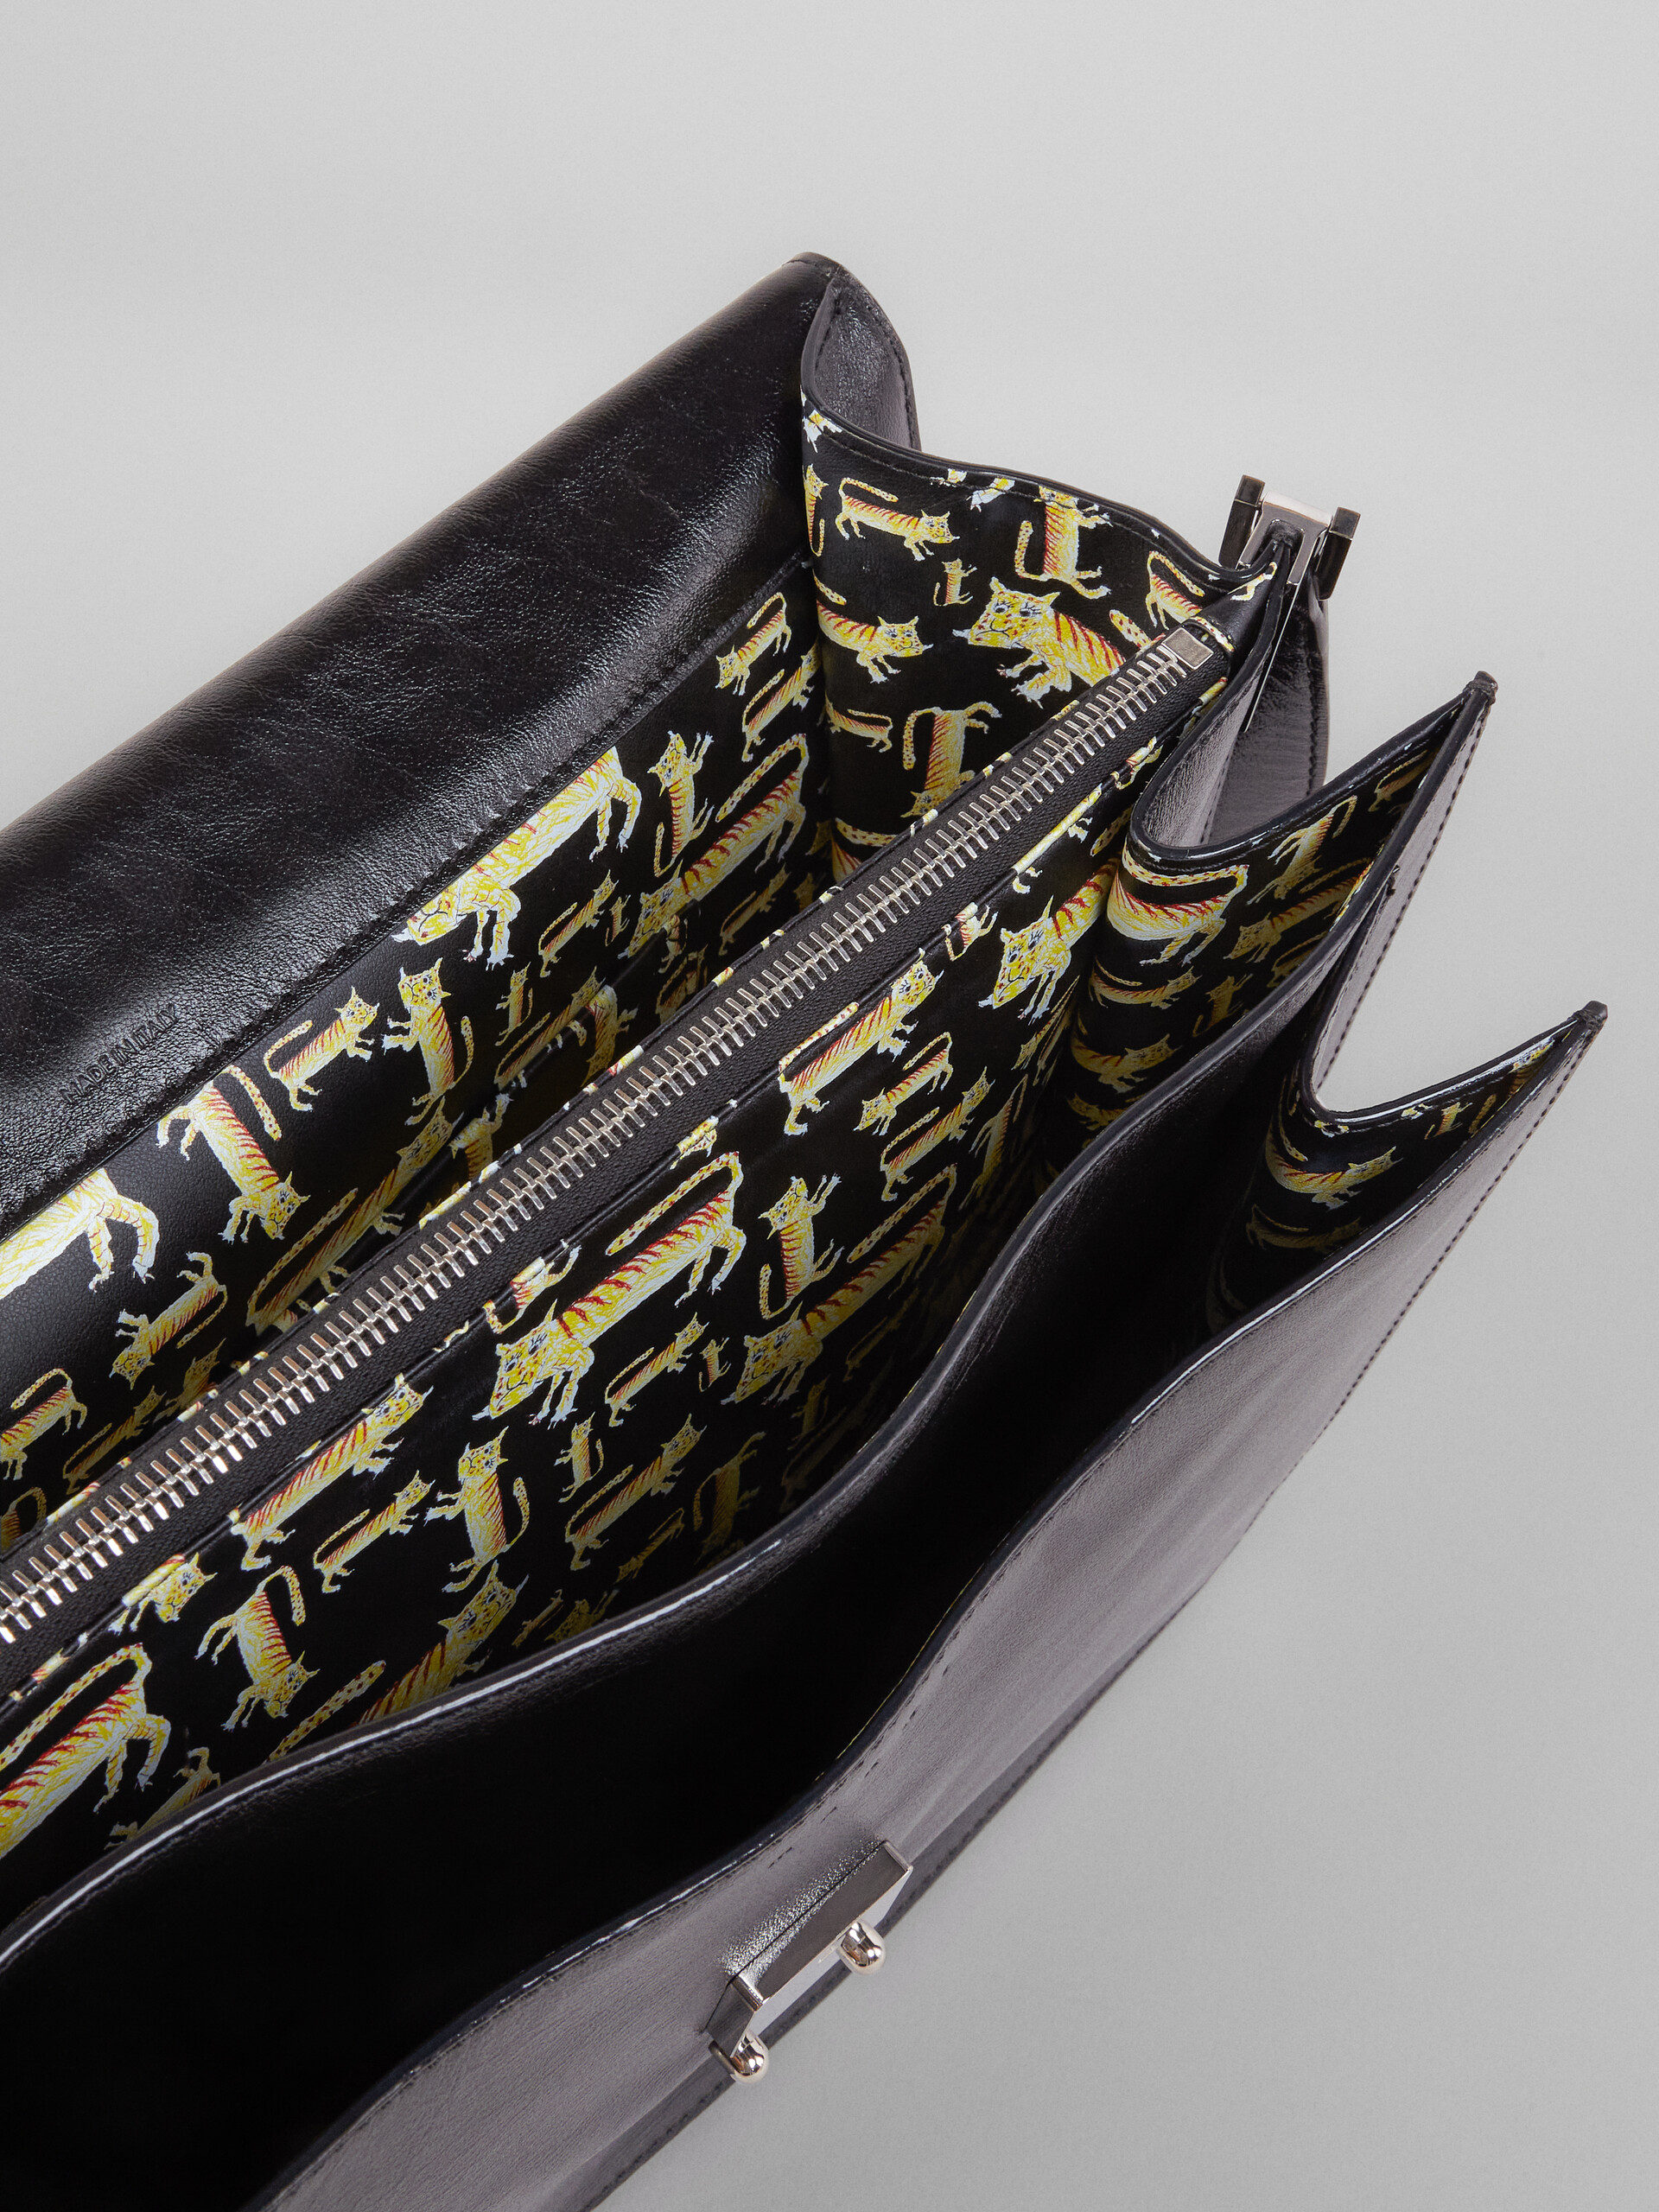 Calf leather TRUNK SOFT bag - Shoulder Bag - Image 5